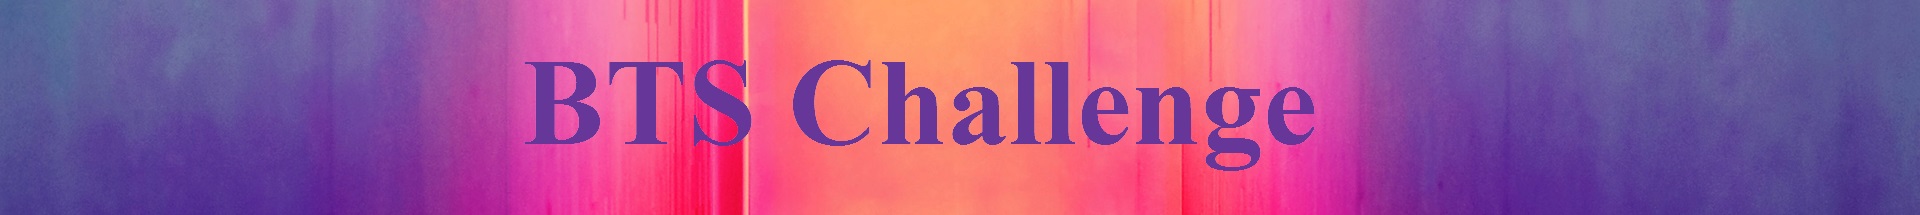 BTS challenge